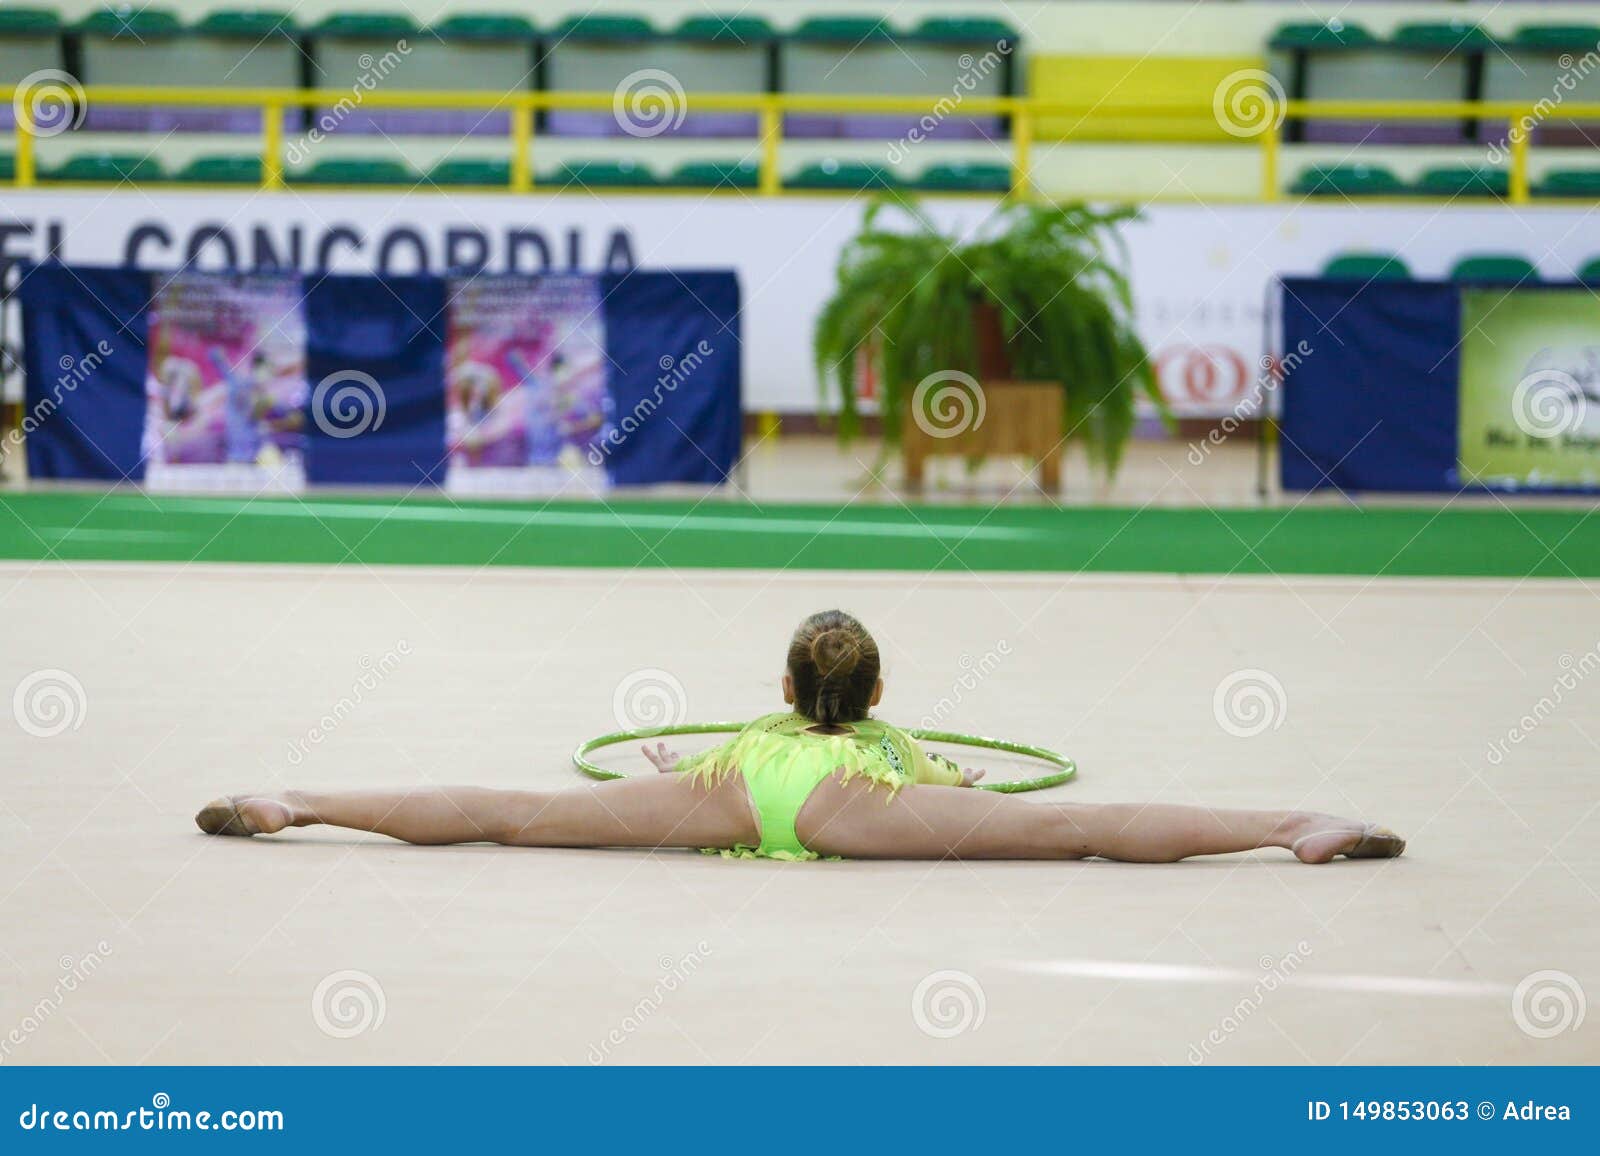 rhythmic gymnastic in open legs  de.photo-pic.cyou